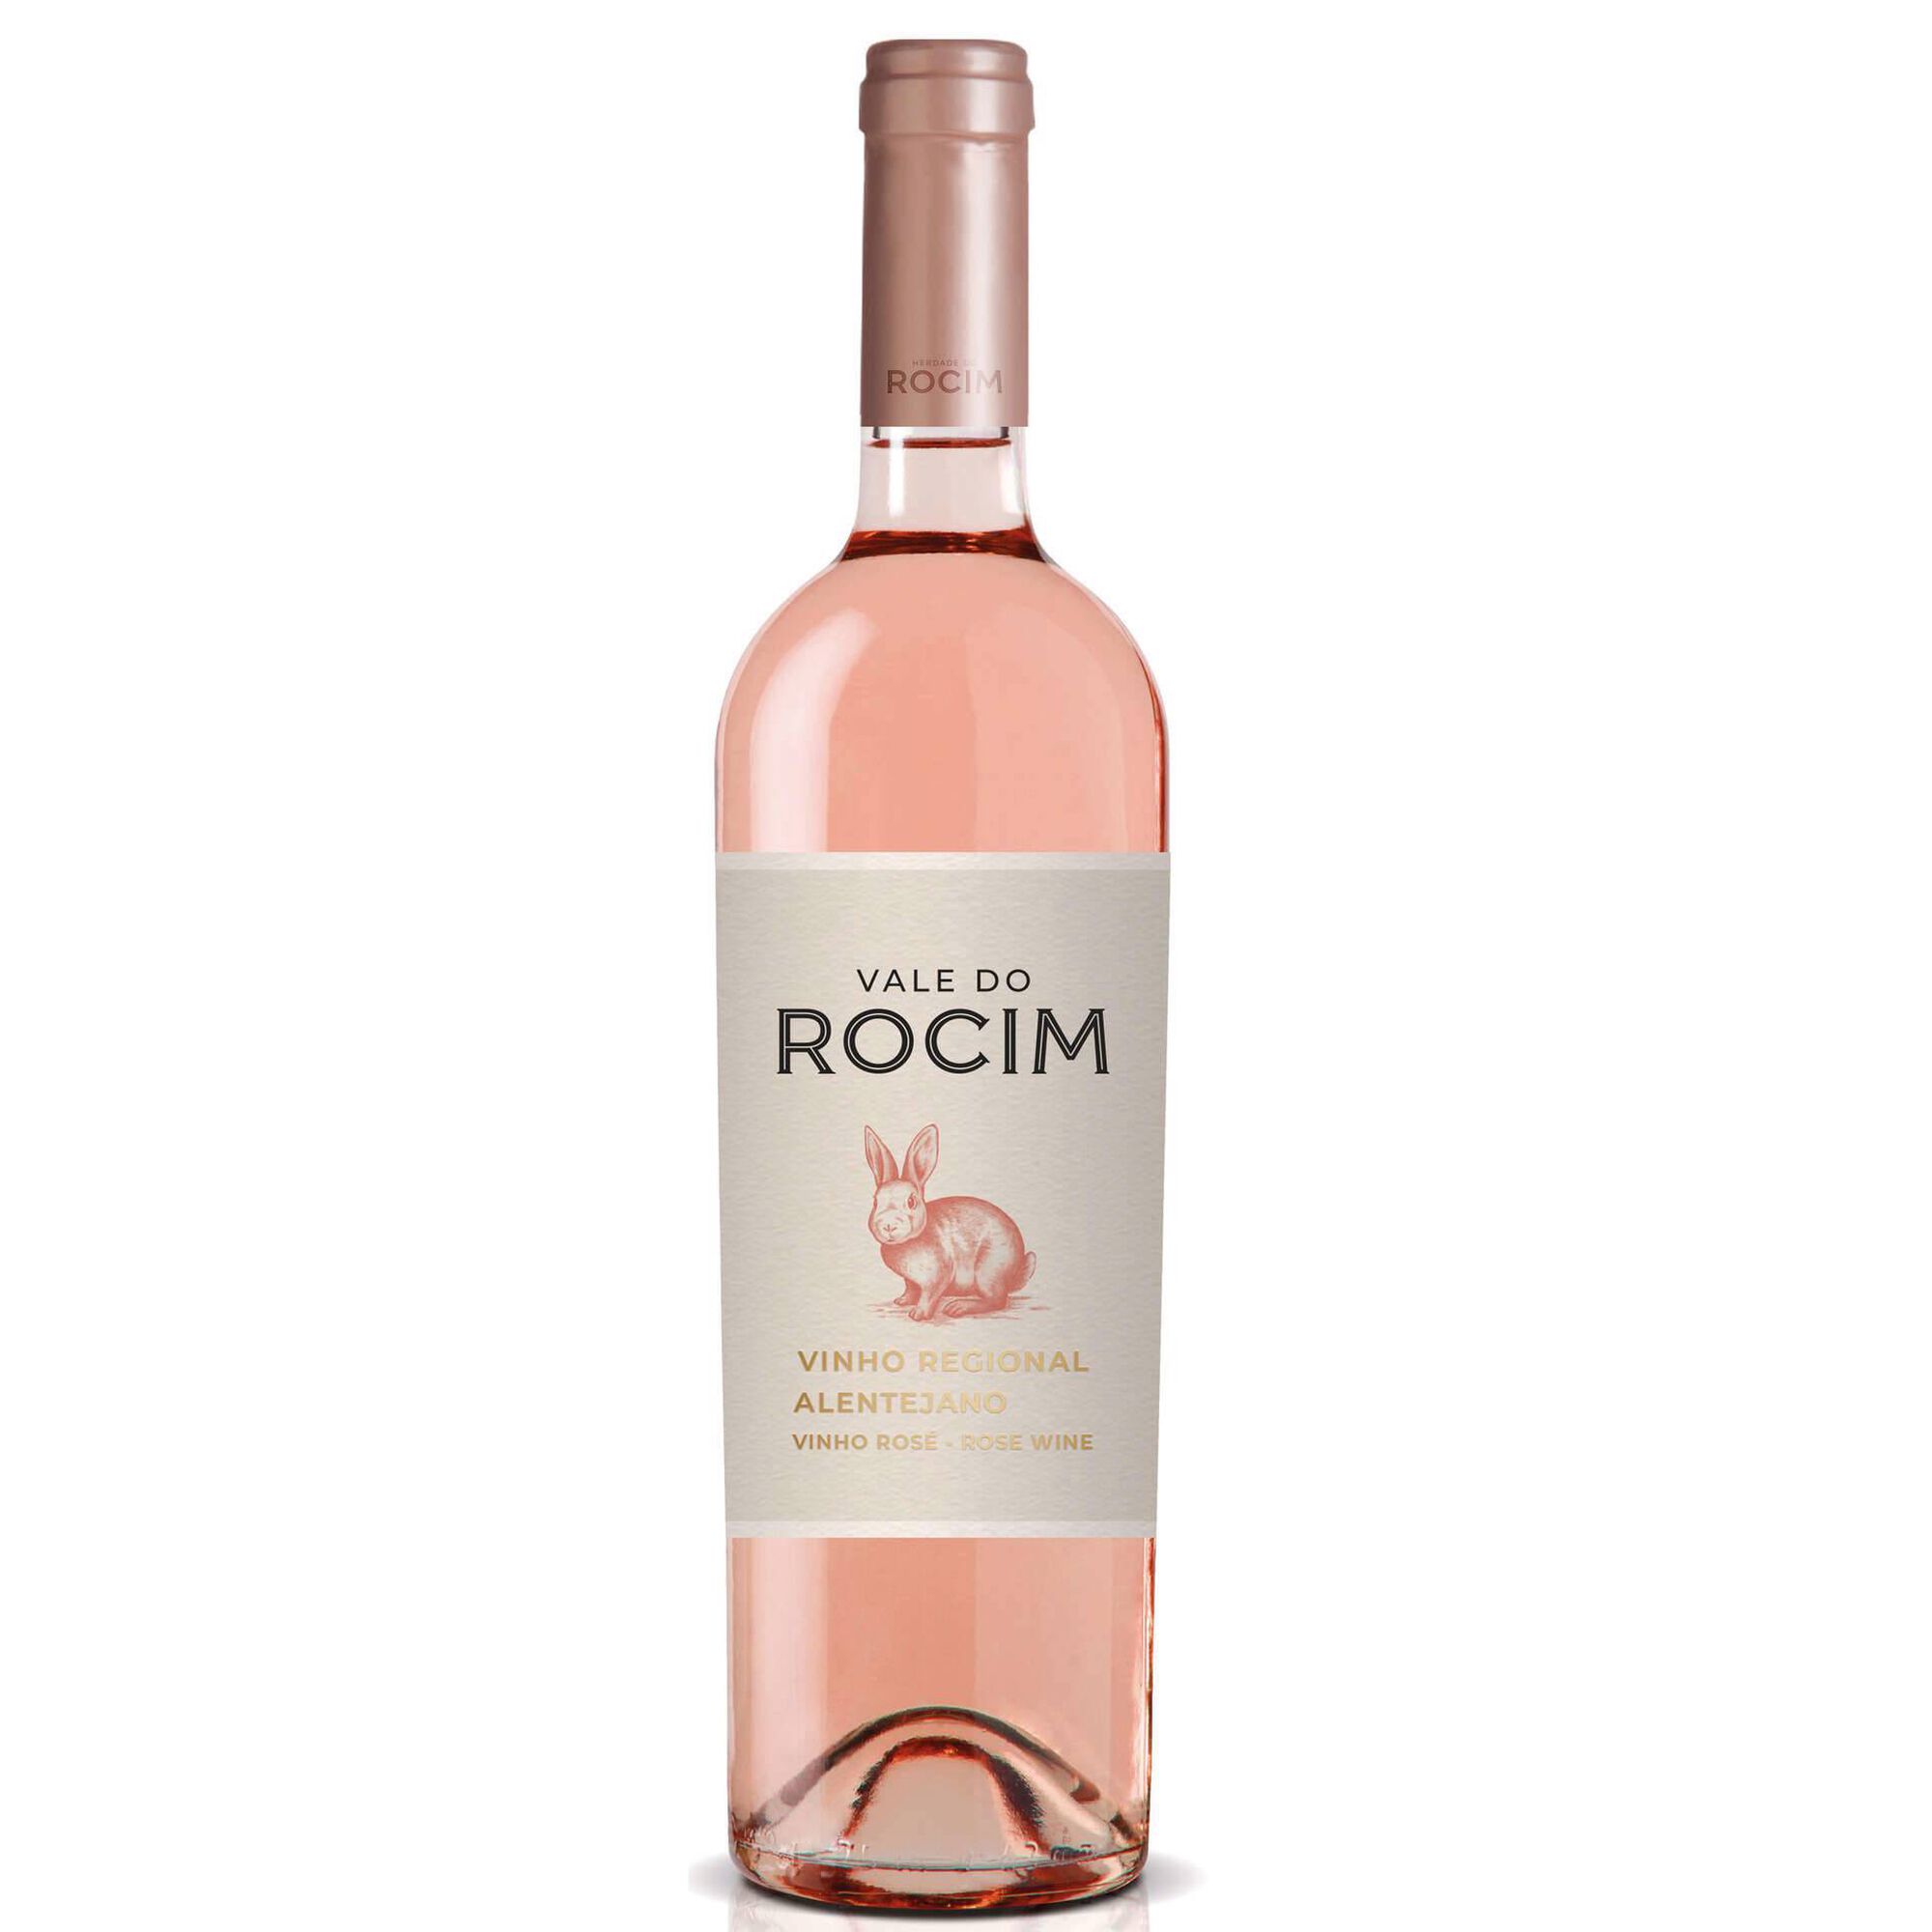 Vale do Rocim Regional Alentejano Vinho Rosé